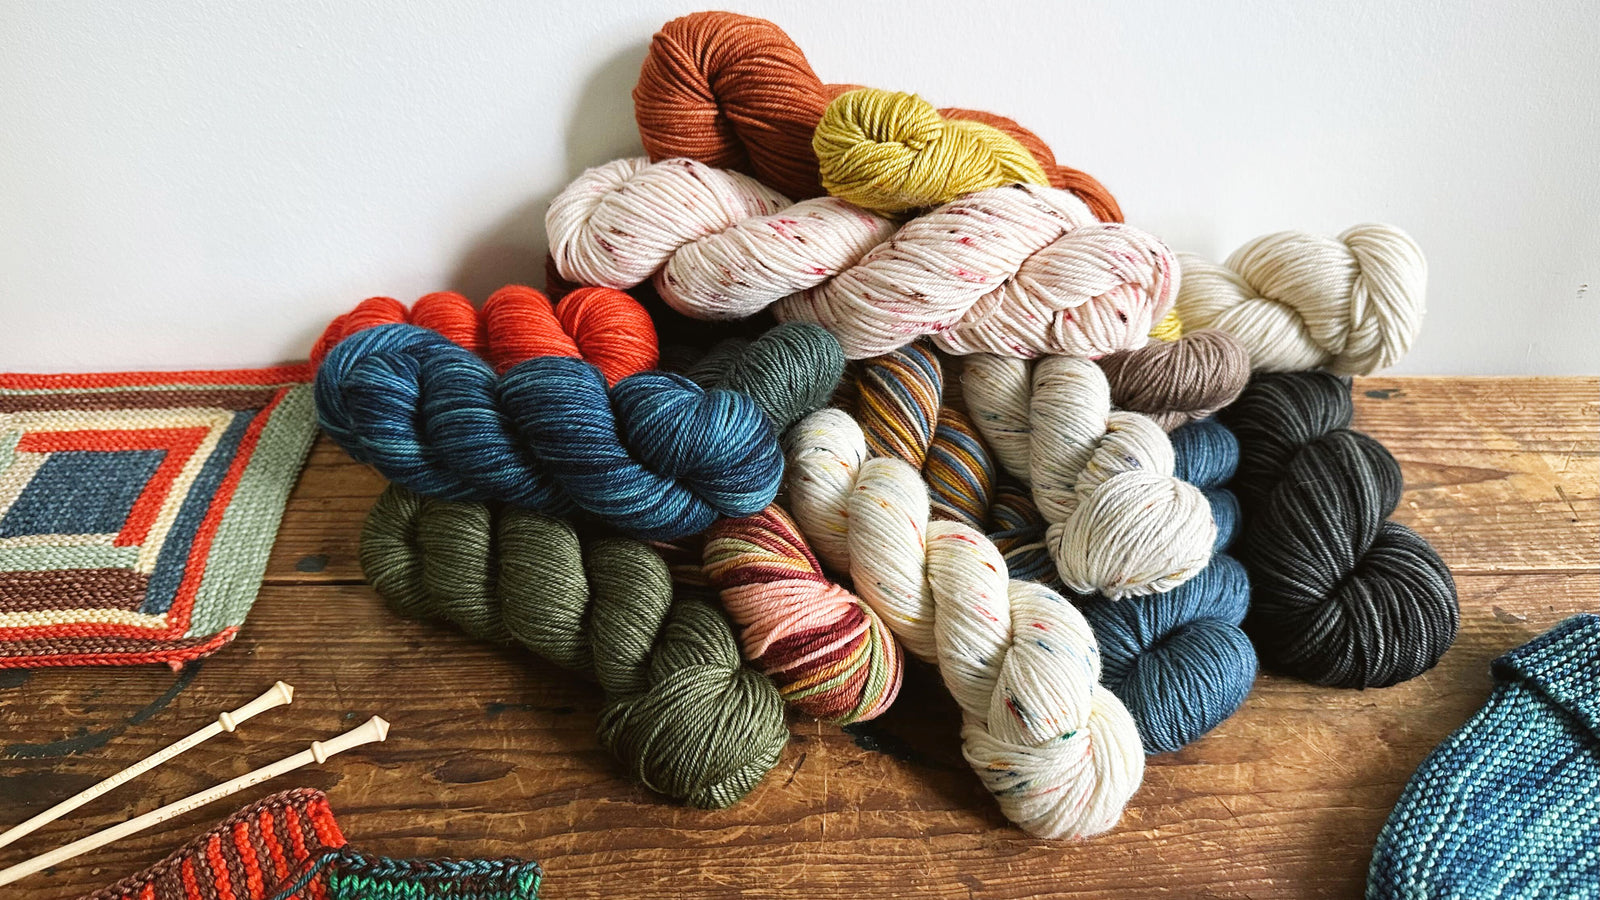 Studio Misha & Puff Yarn - Apricot Yarn & Supply